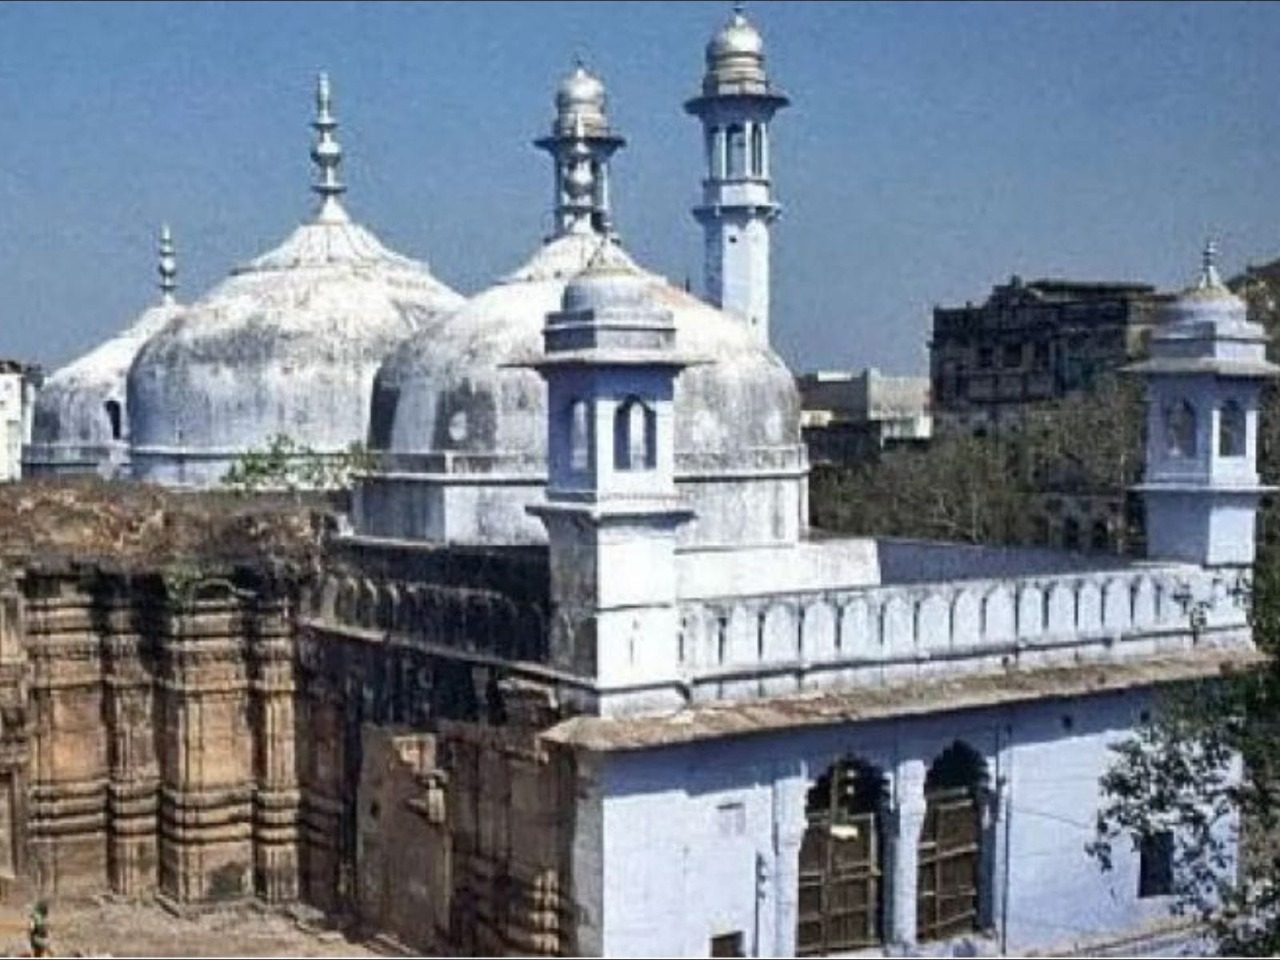 ज्ञानवापी मस्जिद-श्रृंगार गौरी मंदिर मामले में आया बड़ा फैसला, कोर्ट ने हिंदु पक्ष में सुनाया फैसला, 22 सितंबर को है अगली सुनवाई